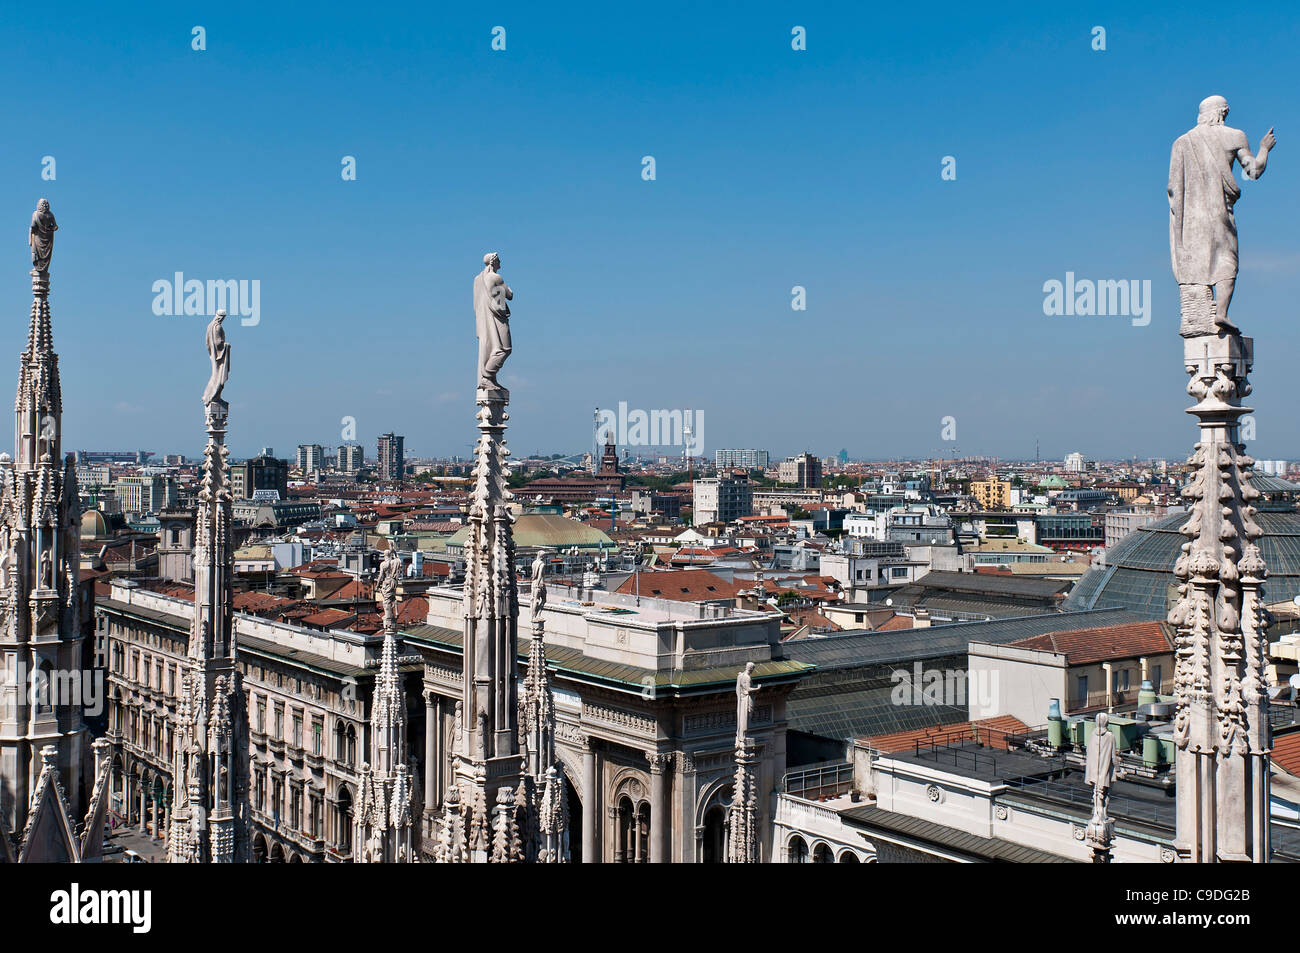 Milan cathedral, Duomo di Milano, marble facade with spires Stock Photo